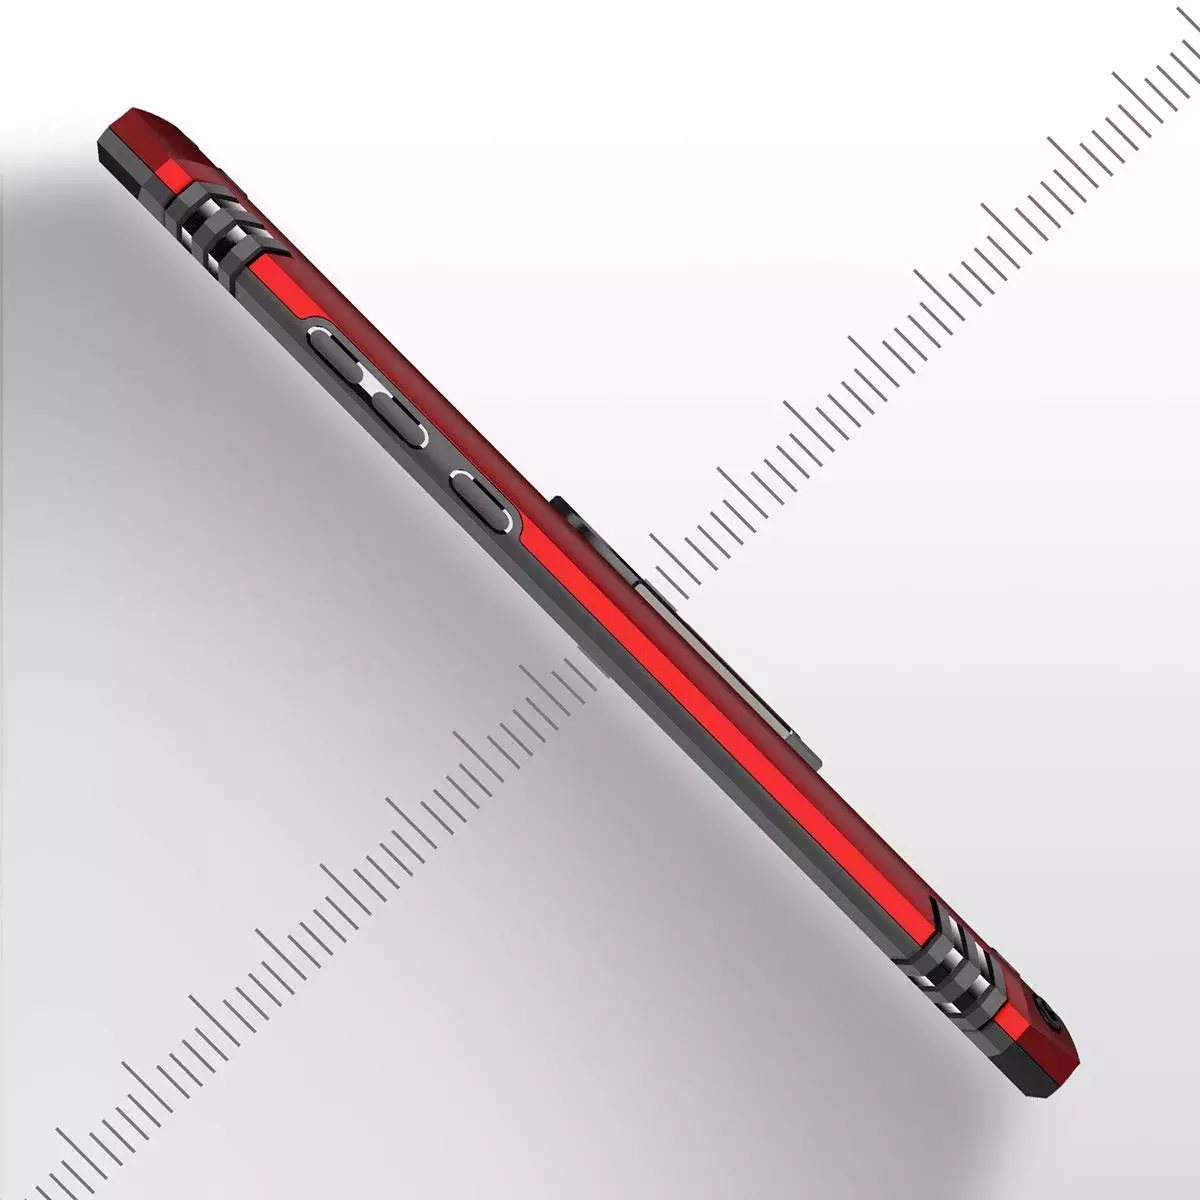 Ударопрочный чехол Serge Ring for Magnet для Xiaomi Redmi K20 / K20 Pro / Mi9T / Mi9T Pro, Красный